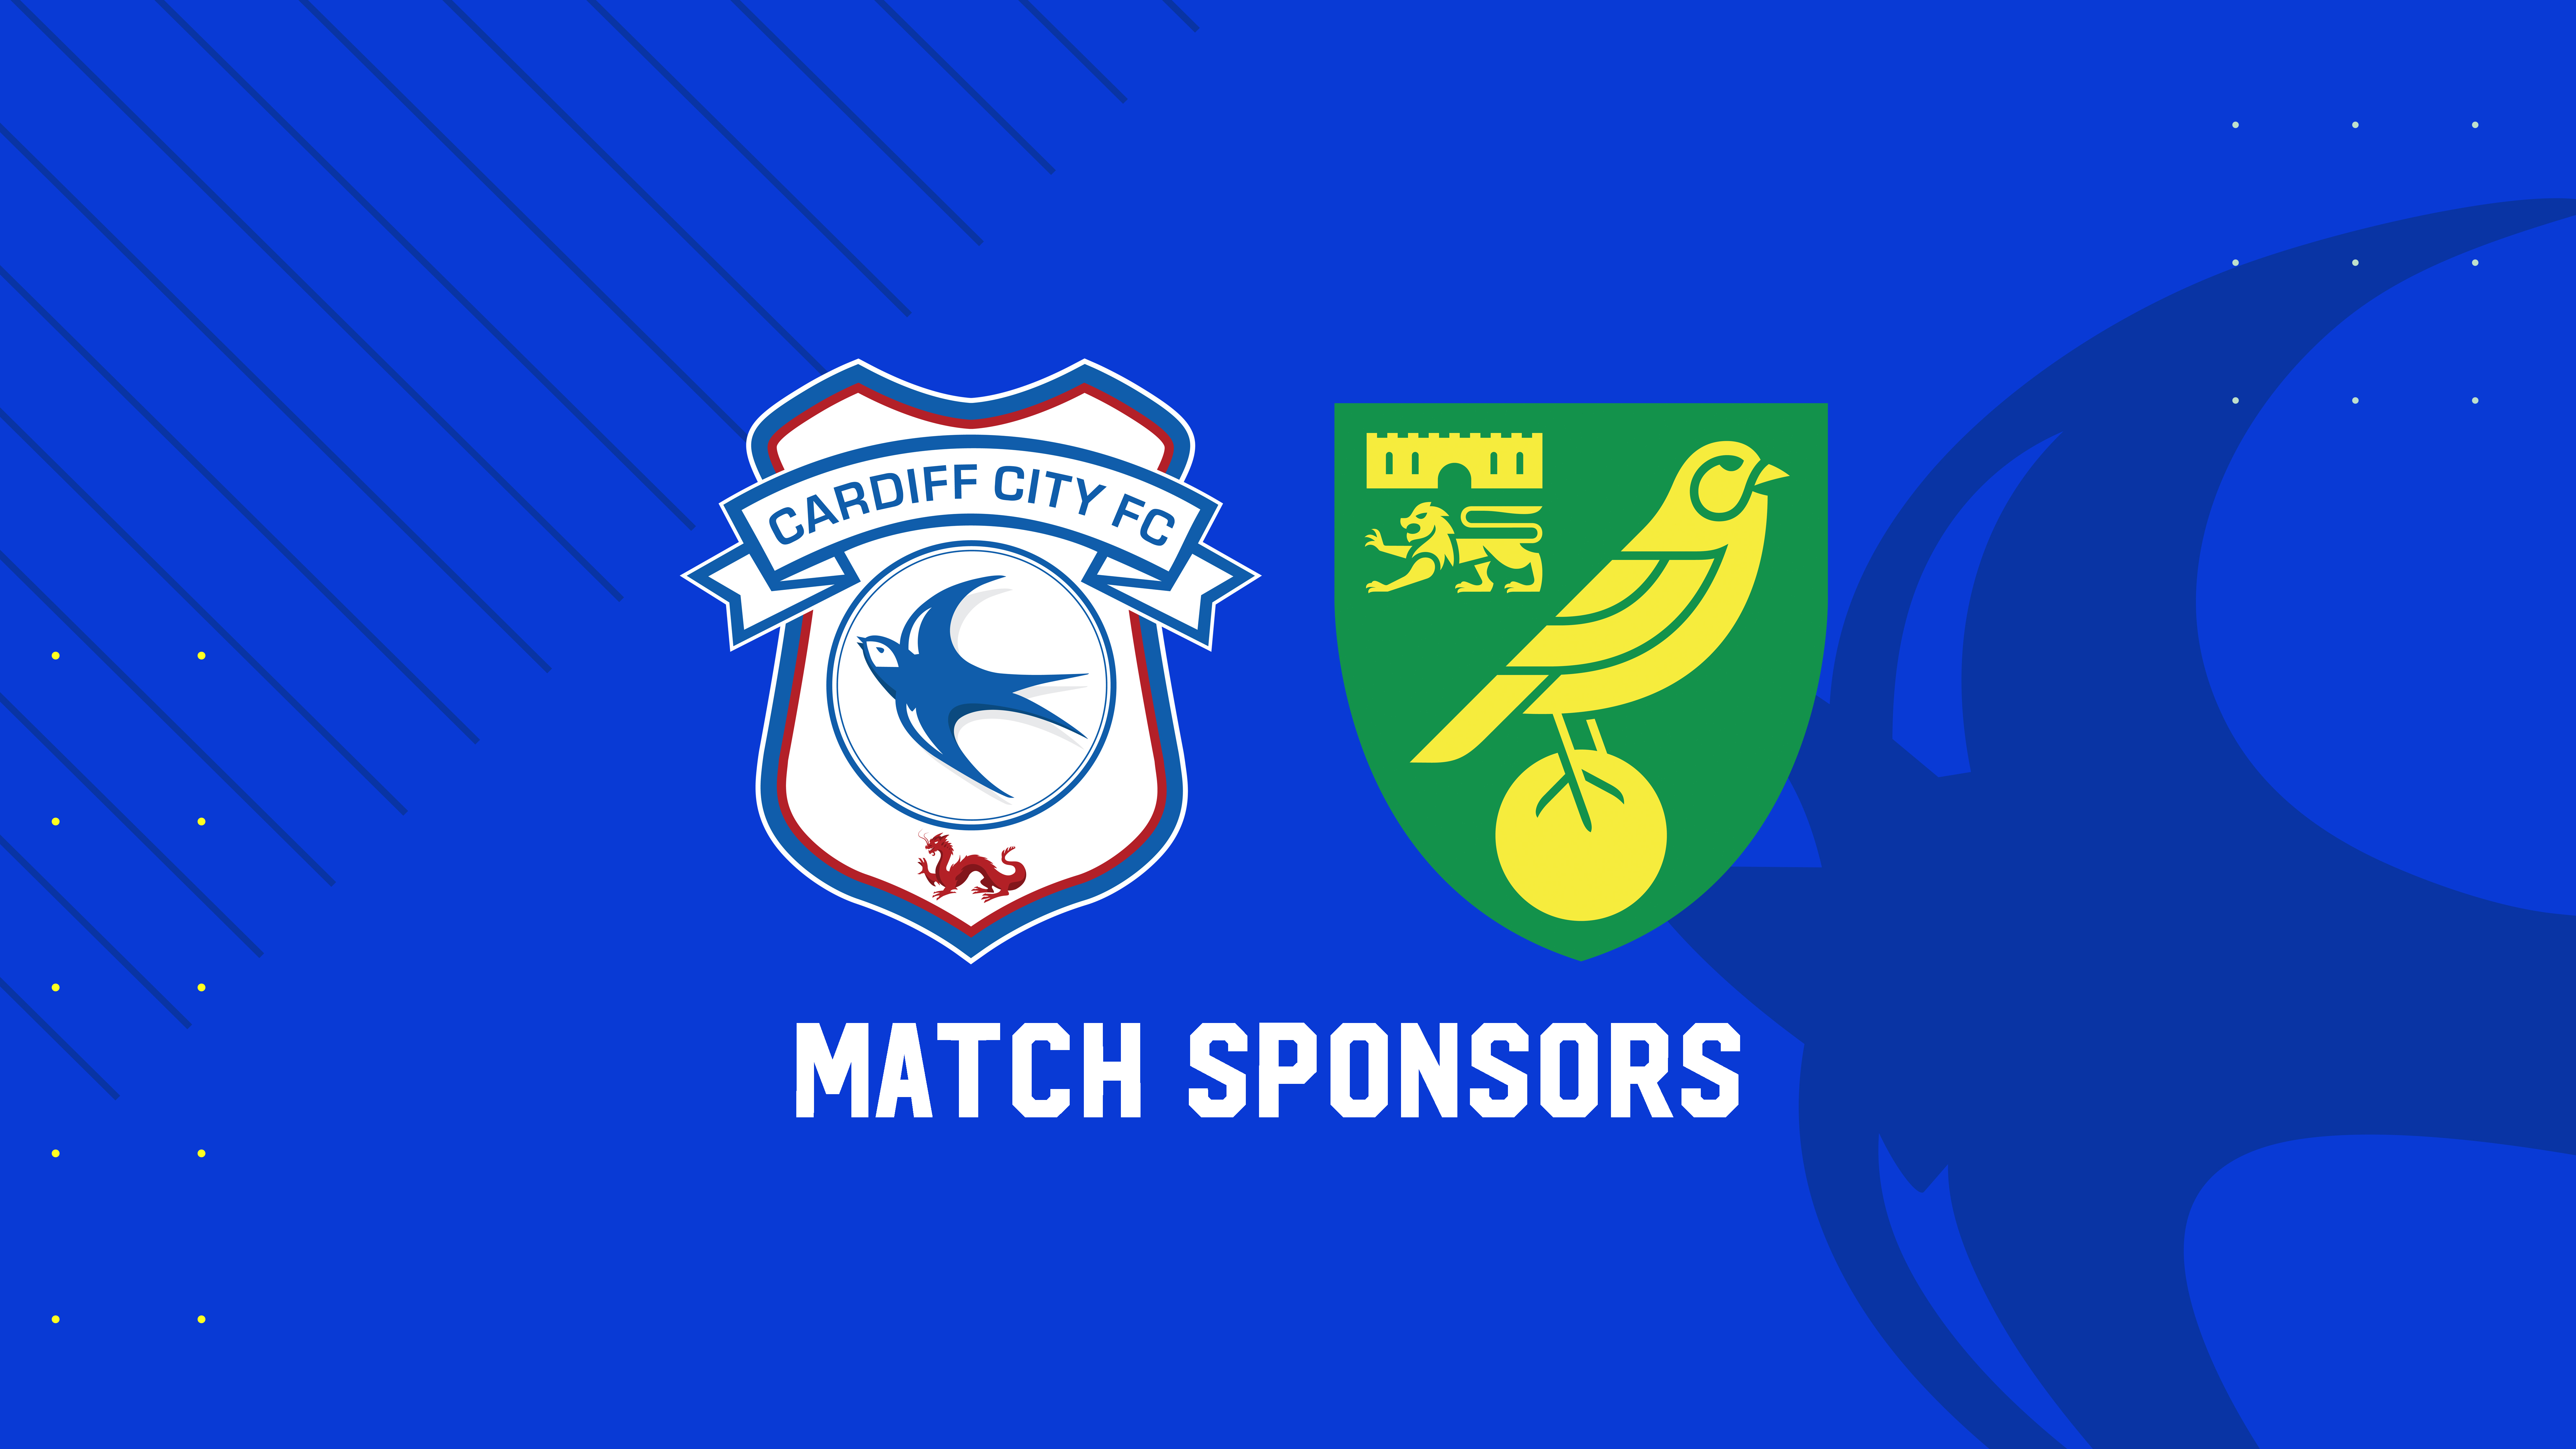 Match Sponsors | Cardiff City vs. Norwich City